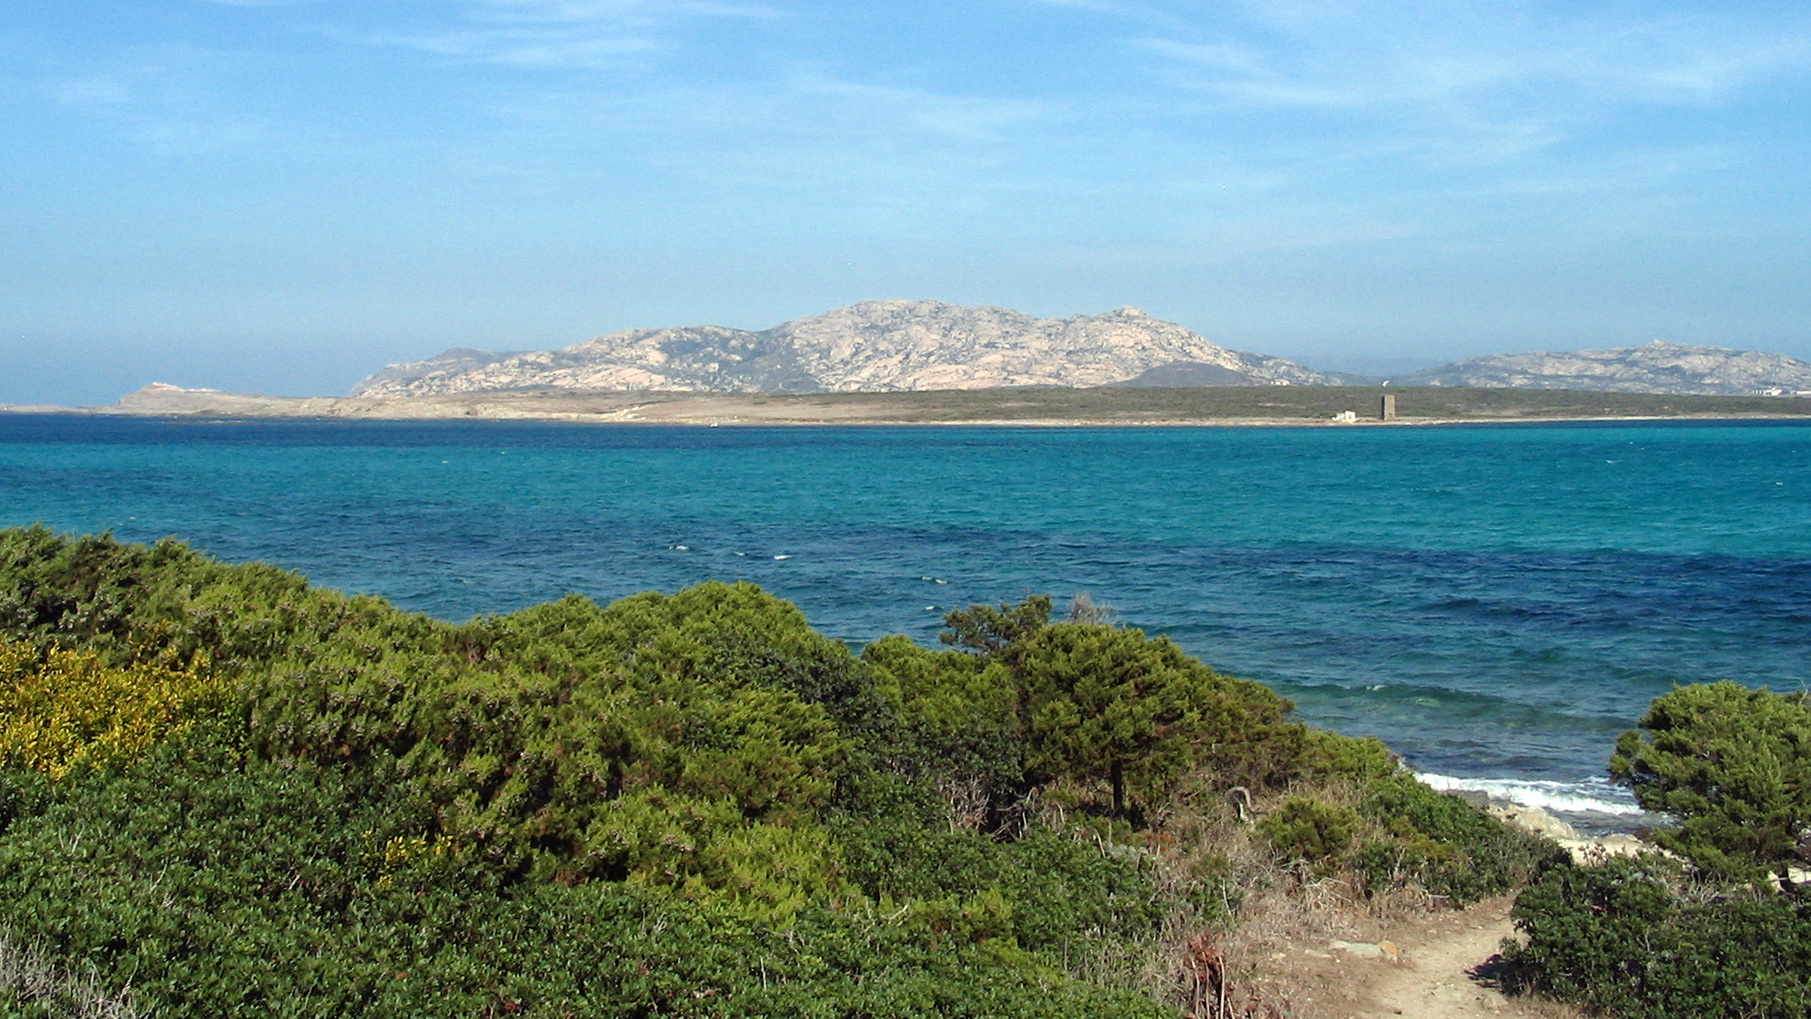 Isole minori, sperimentazione all'Asinara